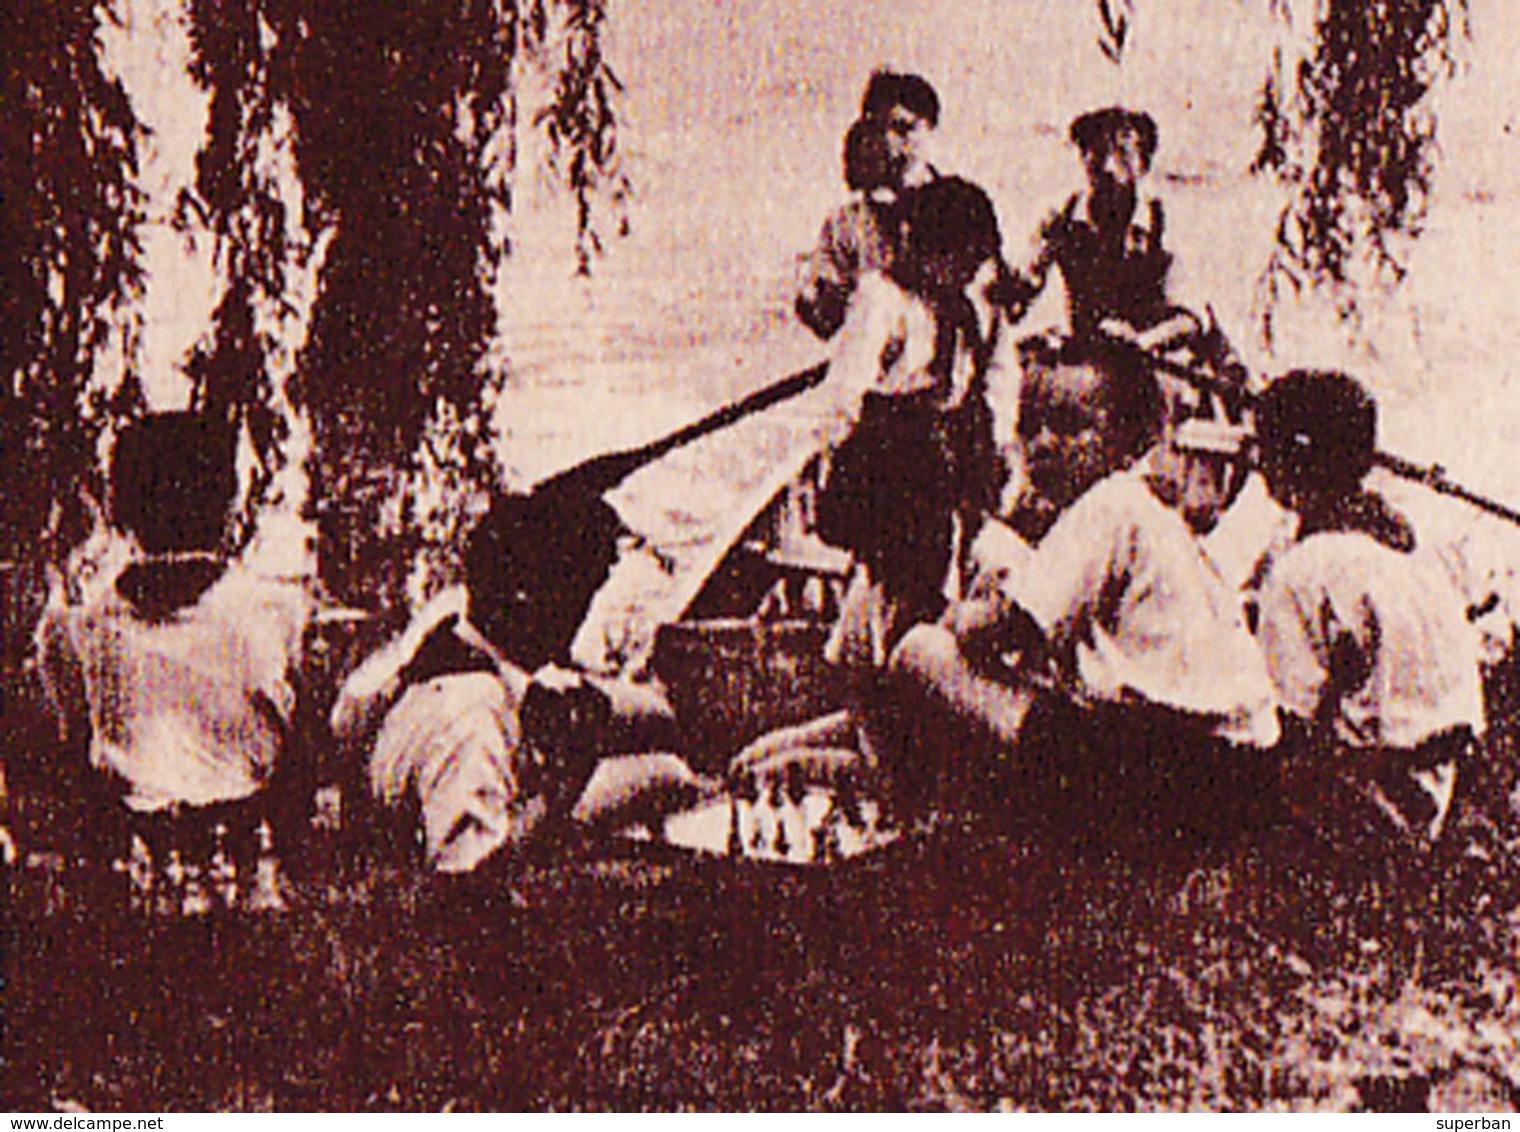 ÉCHECS / CHESS : ENFANTS JOUANT AUX ÉCHECS En ROUMANIE / CHILDREN PLAYING CHESS In ROMANIA ~ 1950 - '52 - RRR ! (ab778) - Schach